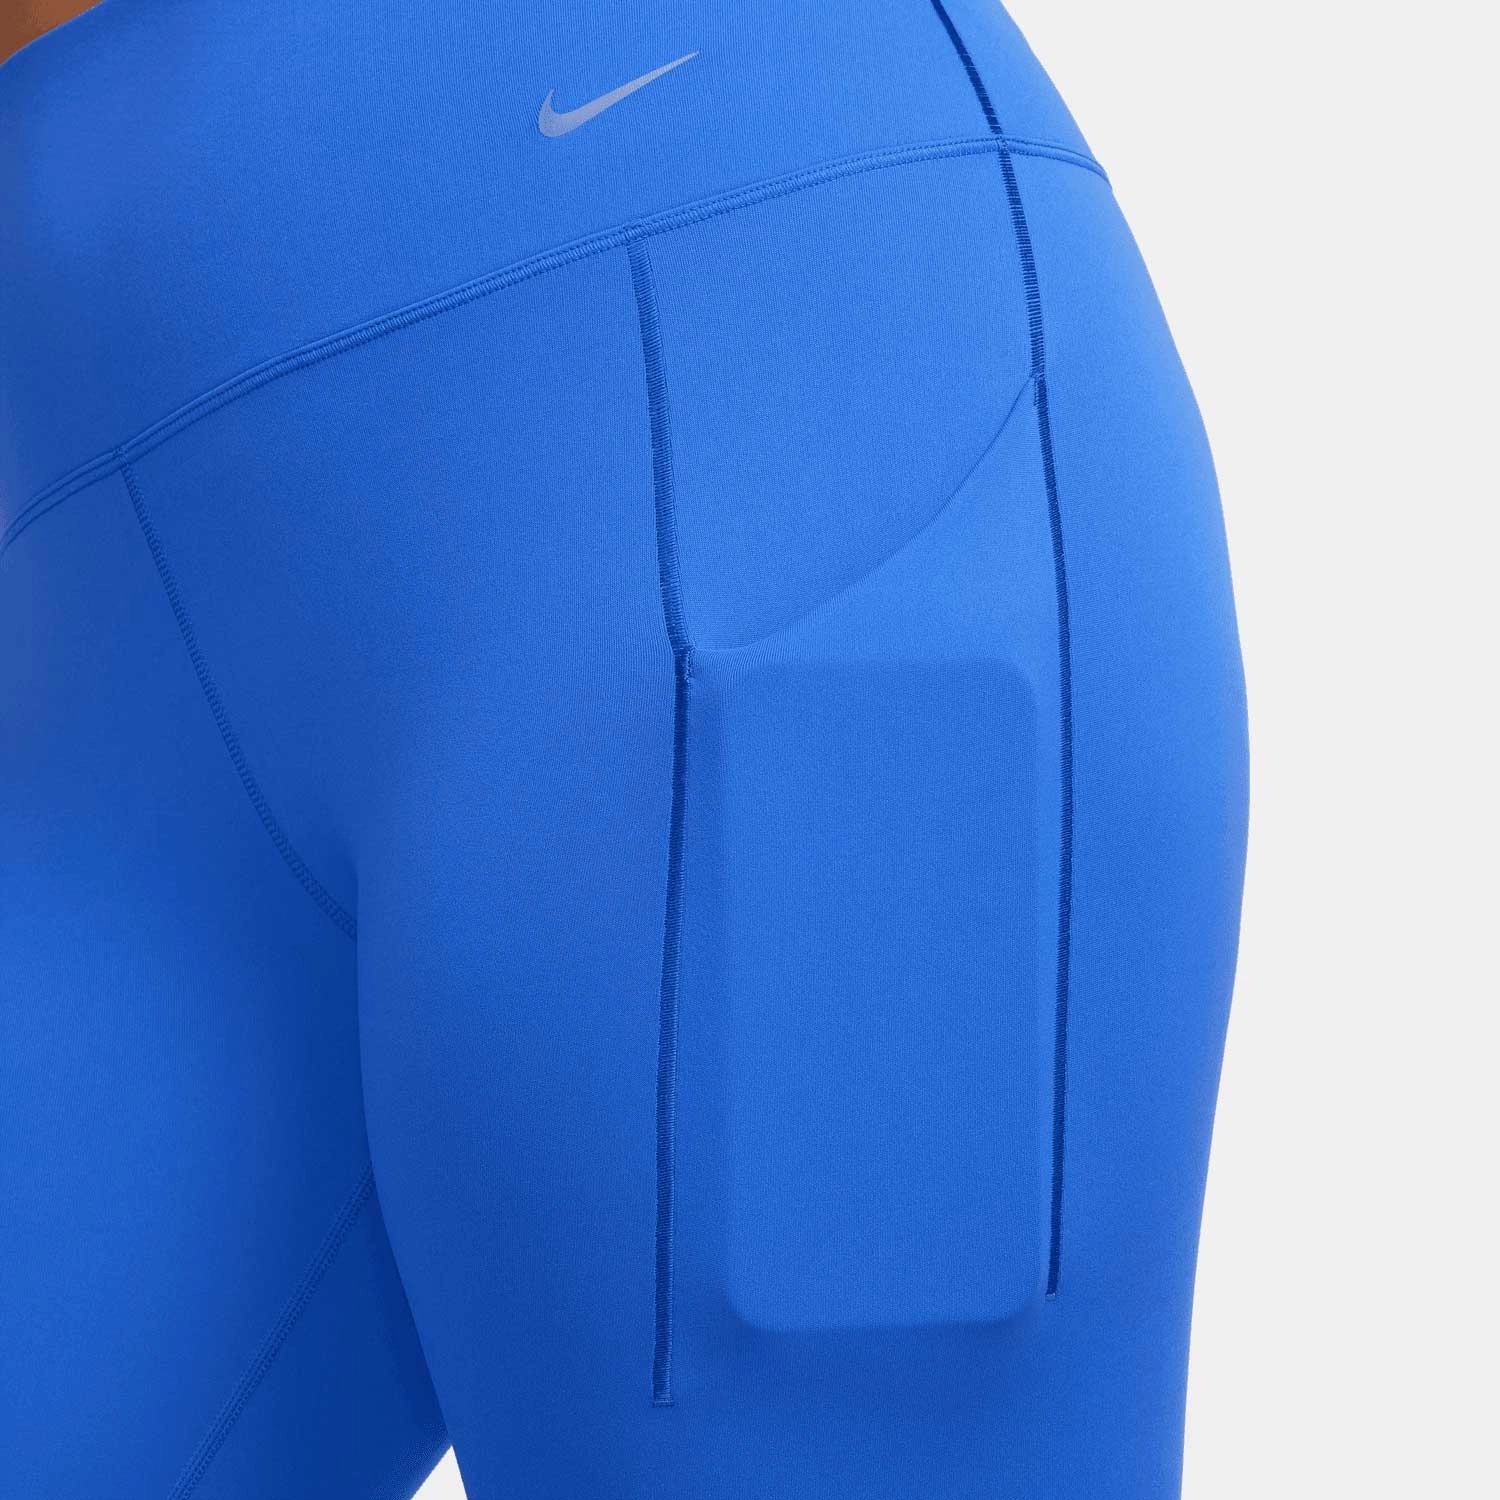 Damskie legginsy o pełnej długości z wysokim stanem i kieszeniami  zapewniające średnie wsparcie Nike Universa